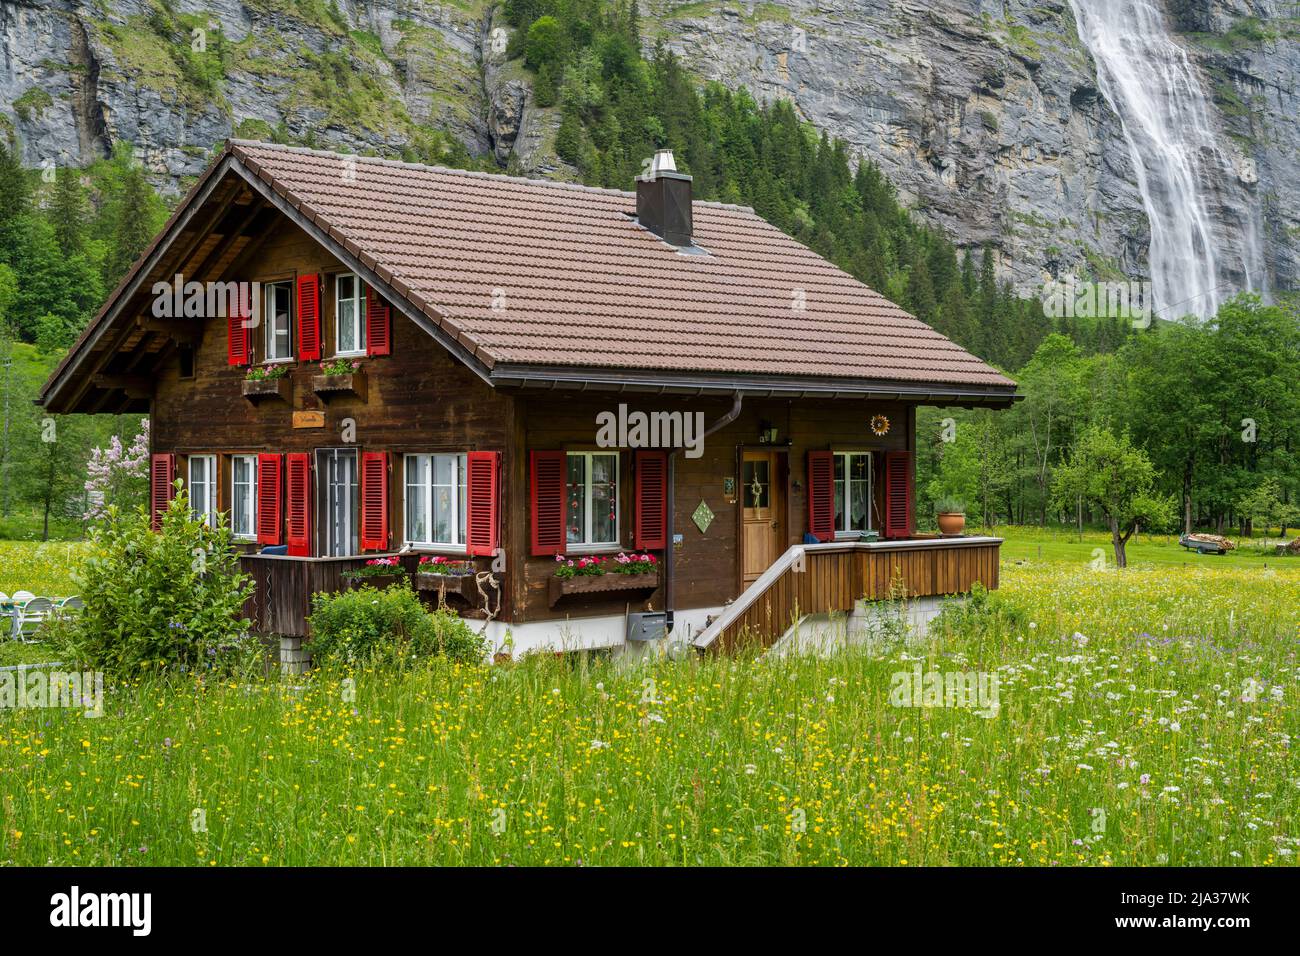 Maison de montagne suisse typique avec chute d'eau derrière, Lauterbrunnen, canton de Berne, Suisse Banque D'Images